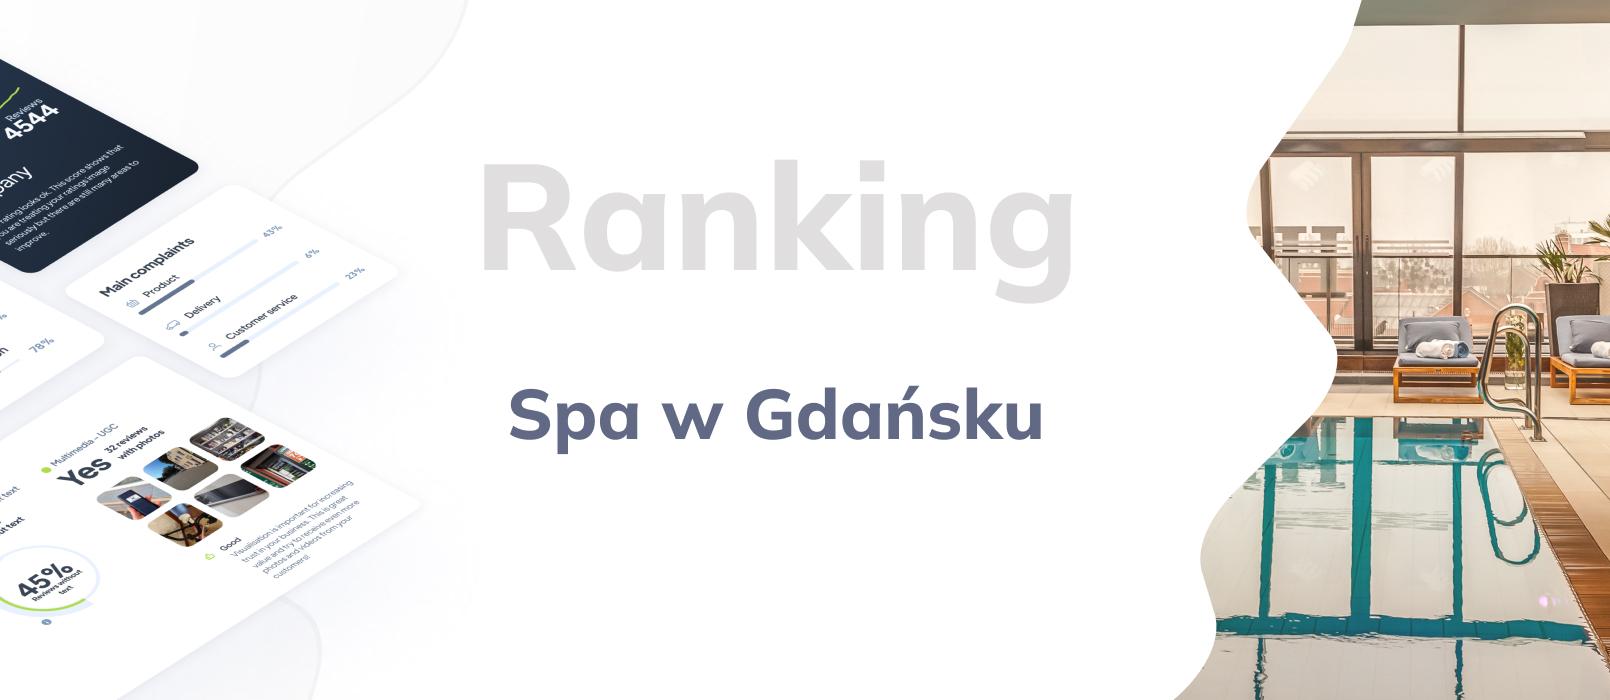 Spa w Gdańsku - ranking TOP 10